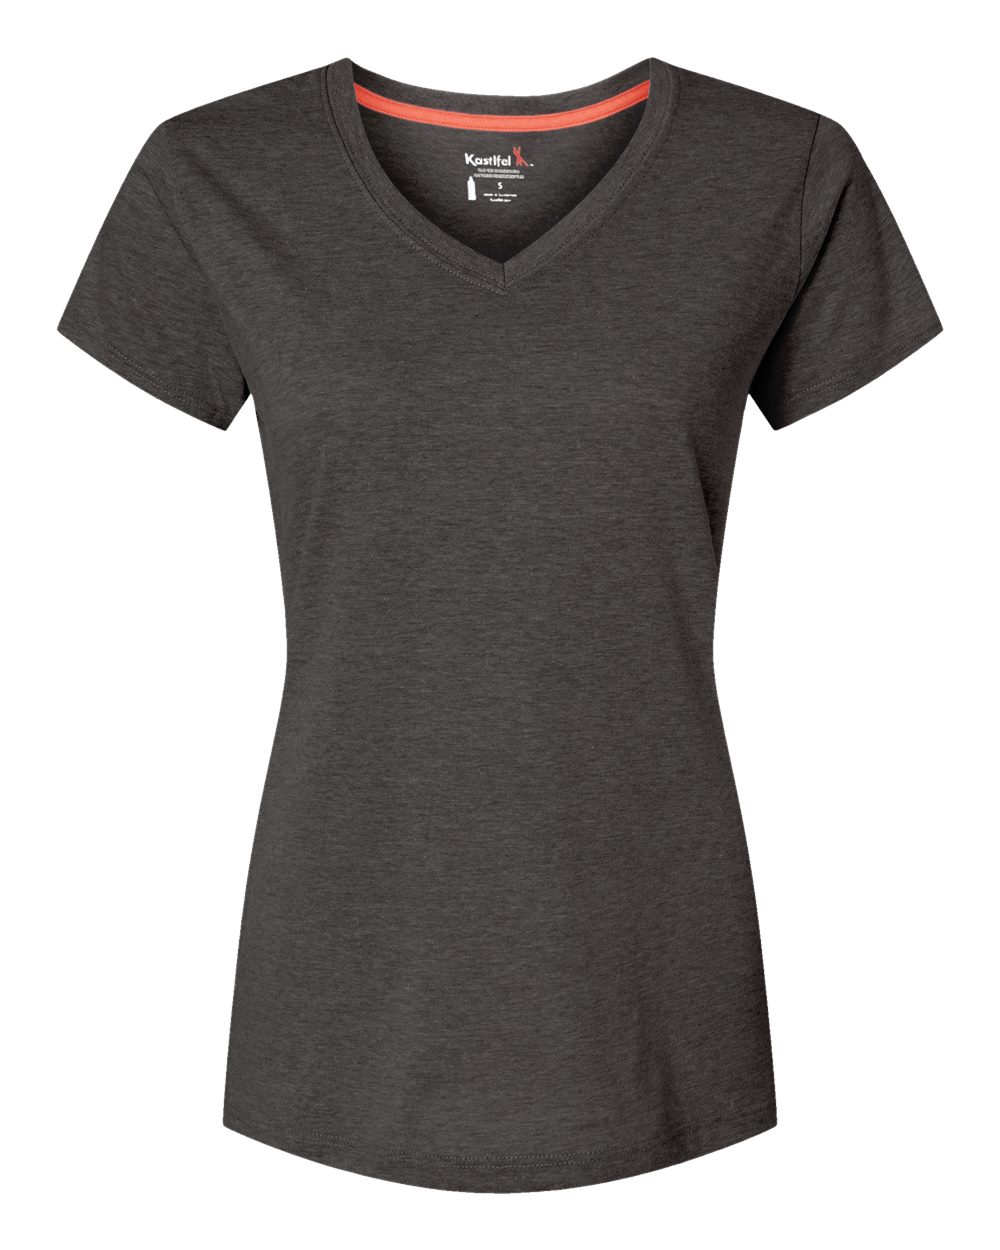 Kastlfel 2011 - Women's RecycledSoft™ V-Neck T-Shirt